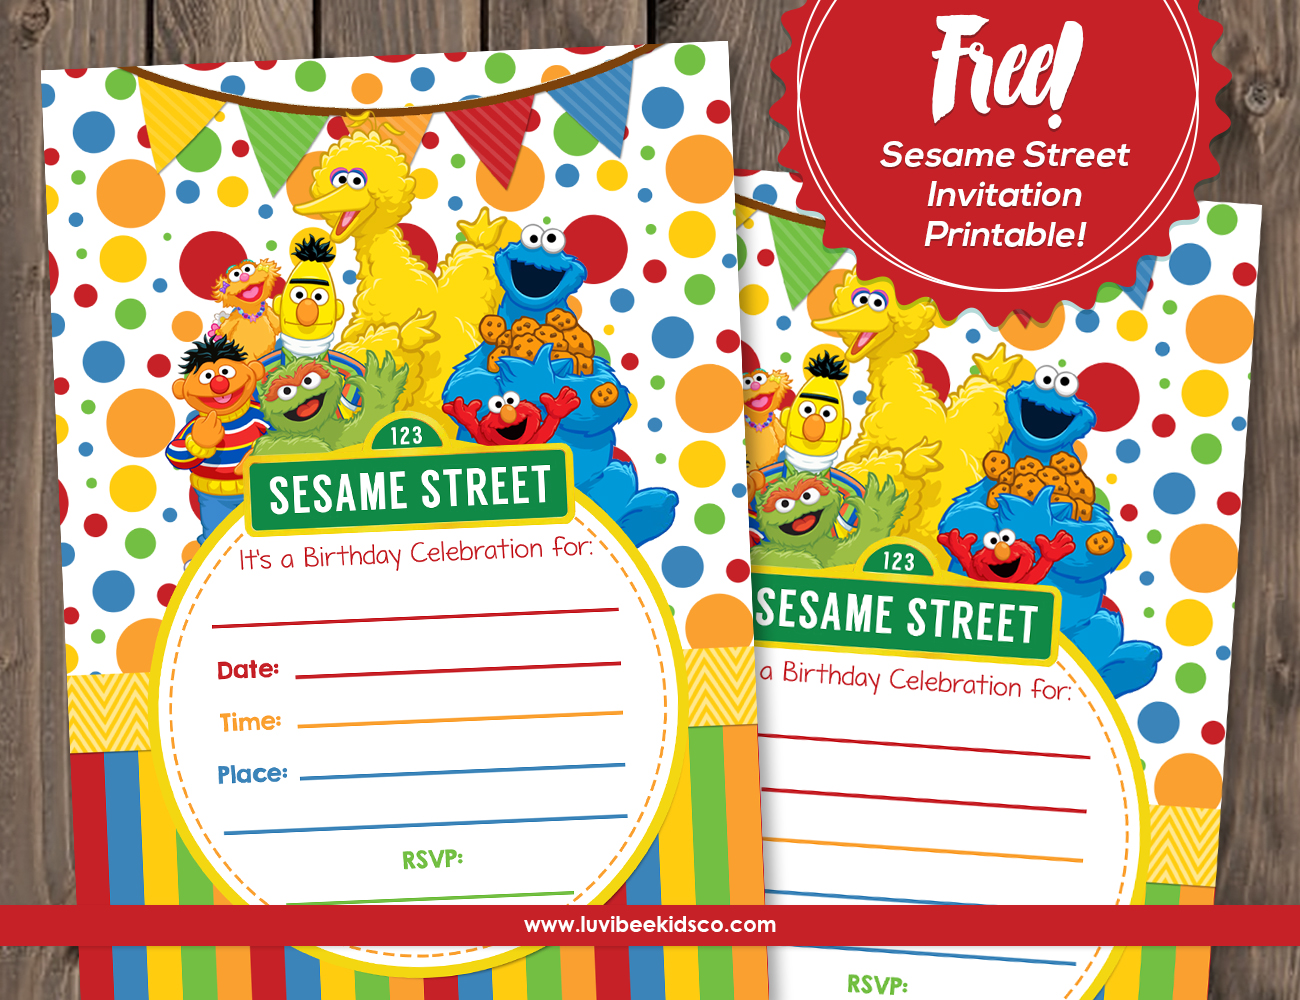 LuvibeeKids Co Blog Sesame Street Free Printable Invitation